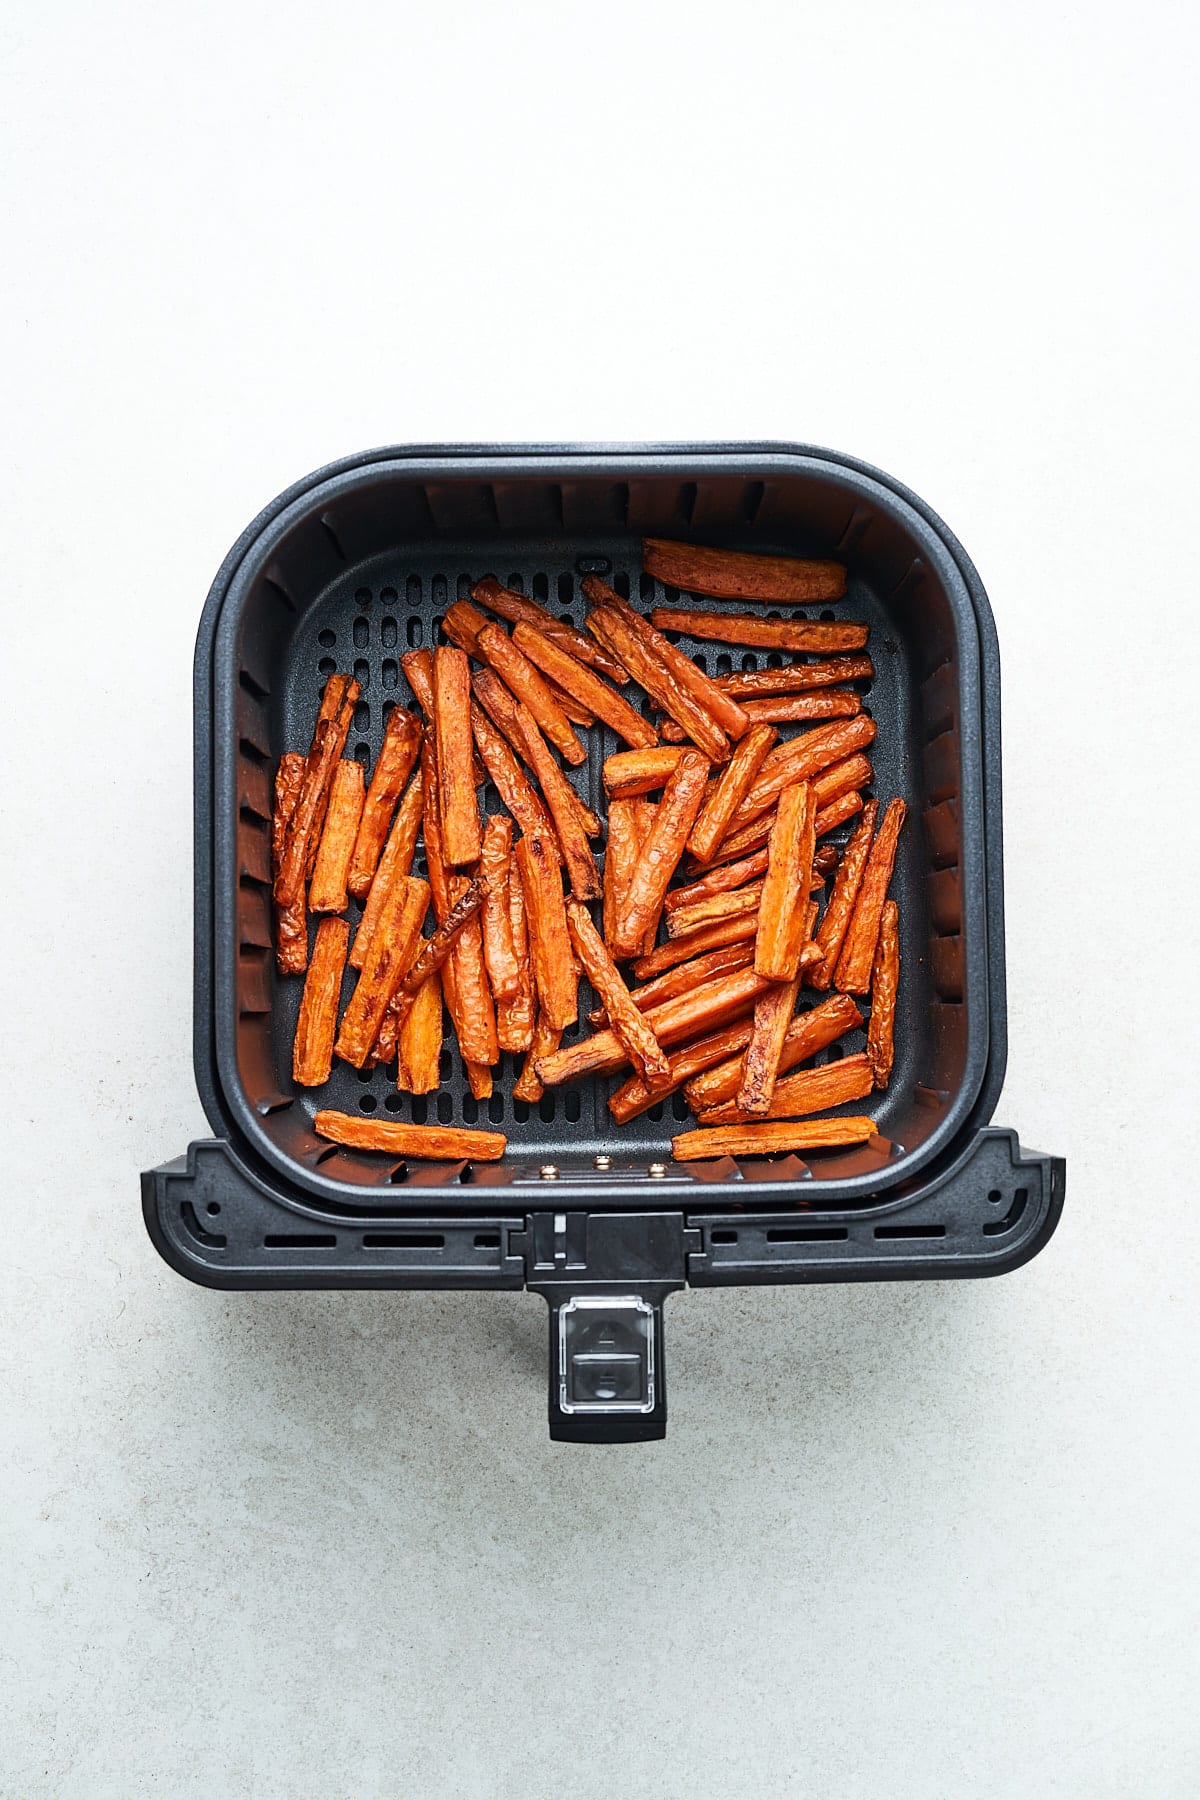 Carrot sticks in an air fryer.